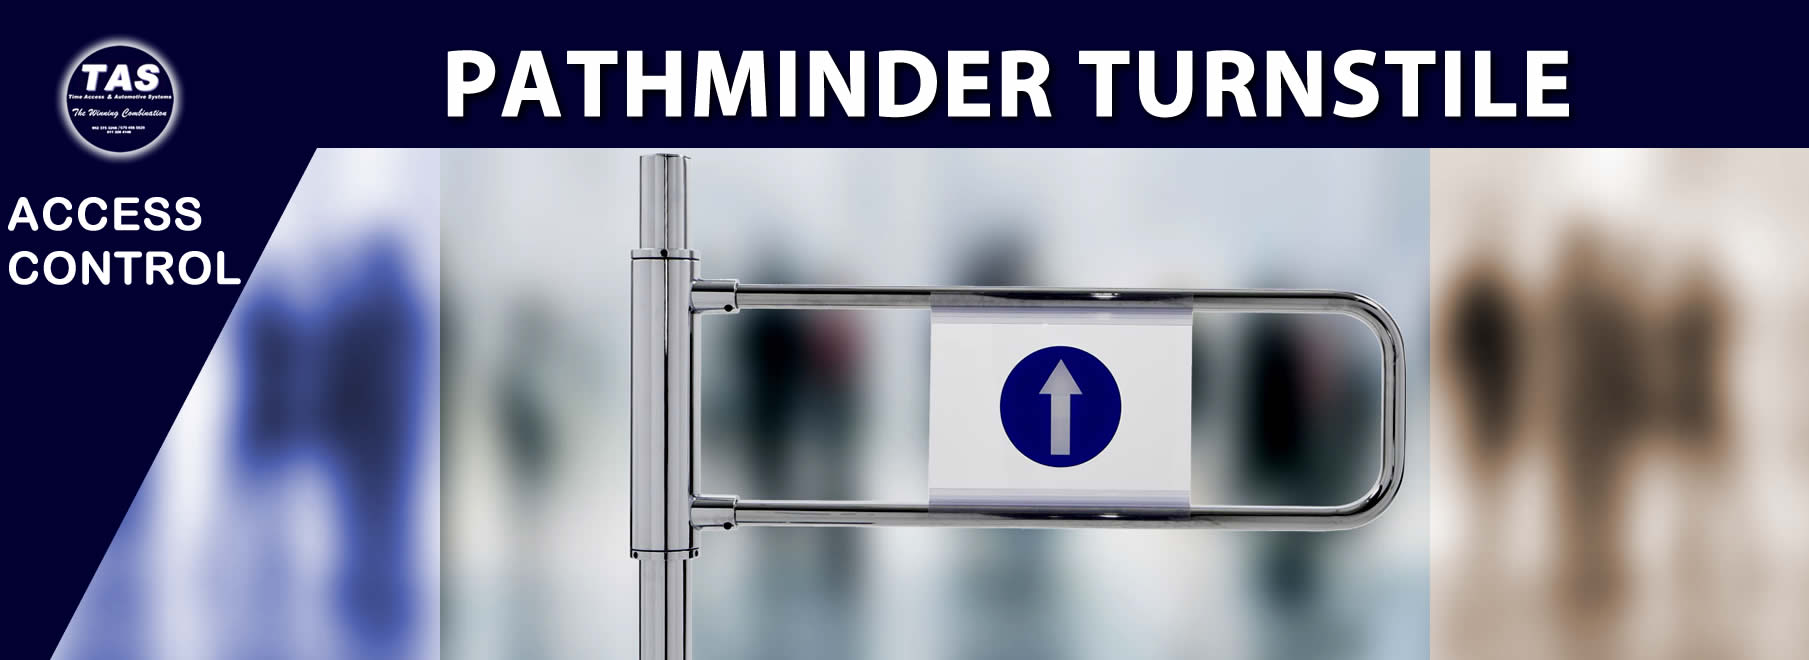 pathminder-turnstile-product Banner